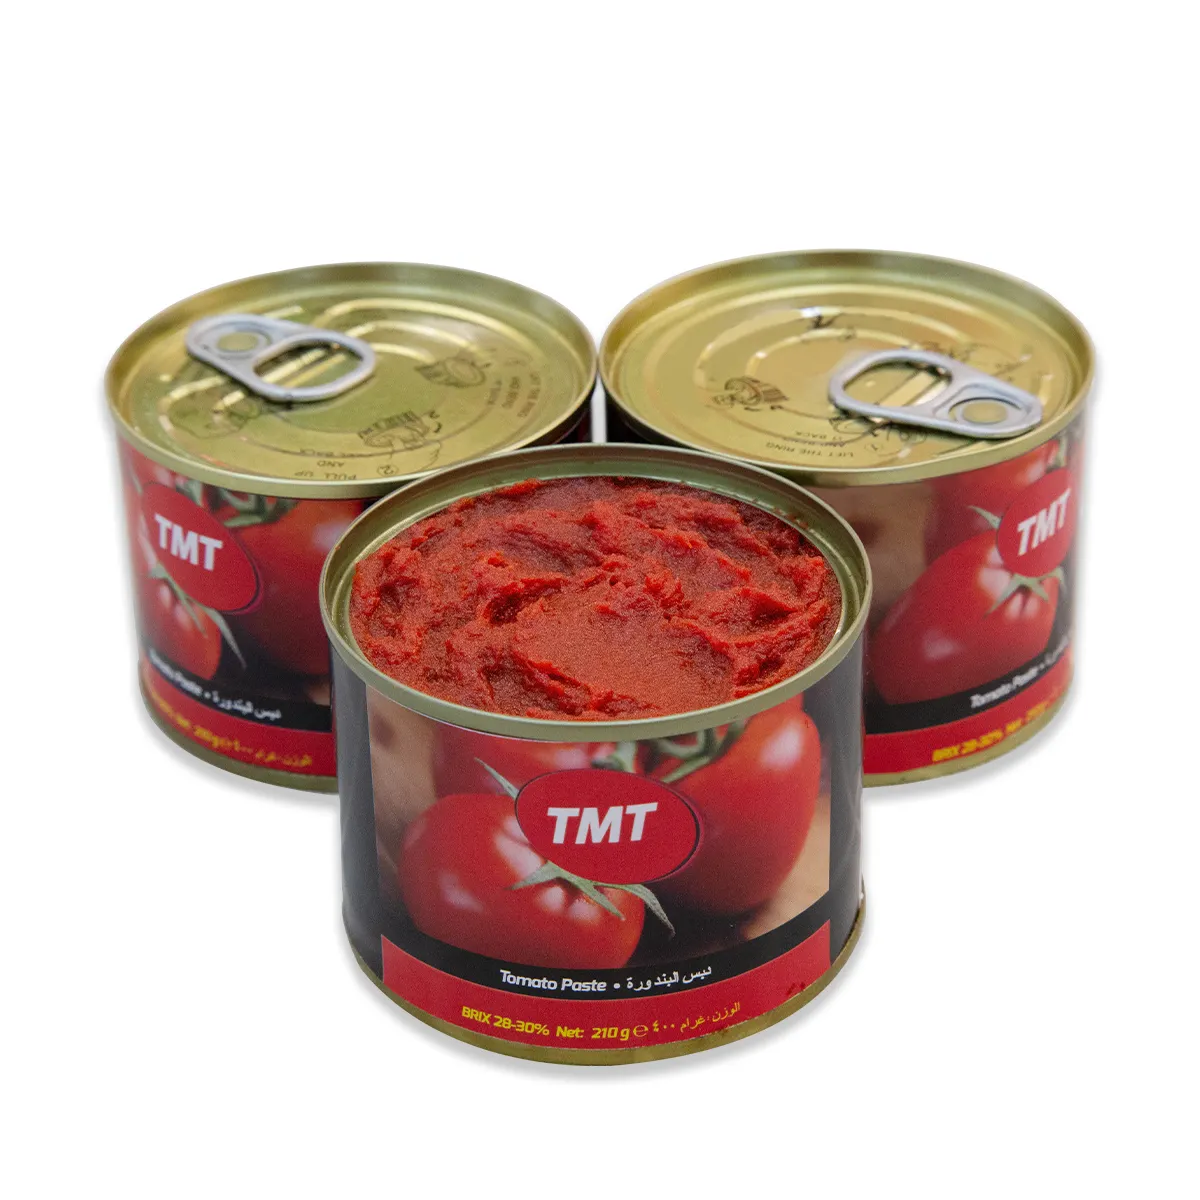 Farklı boyutta yüksek taze kırmızı veya koyu kırmızı sıcak satış konserve domates salçası